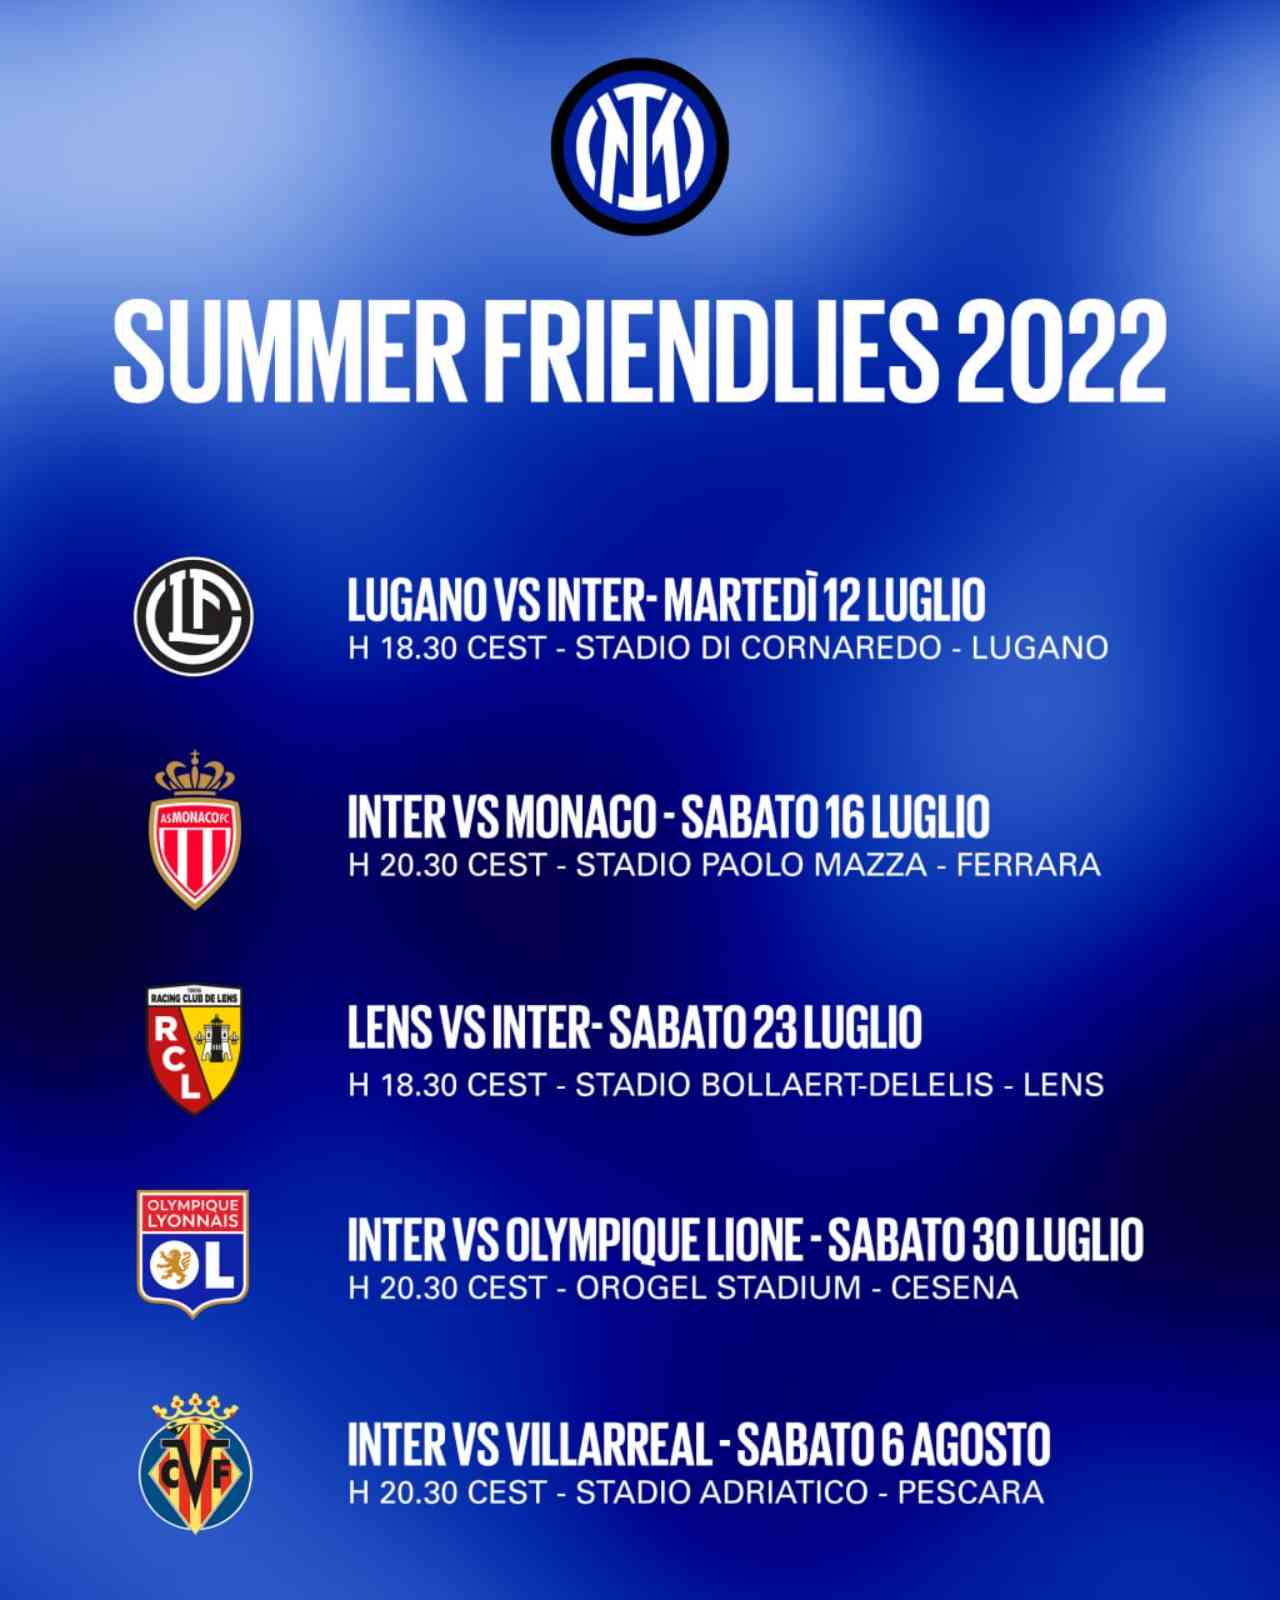 Inter, il calendario completo della tournee estiva: date e orari di luglio